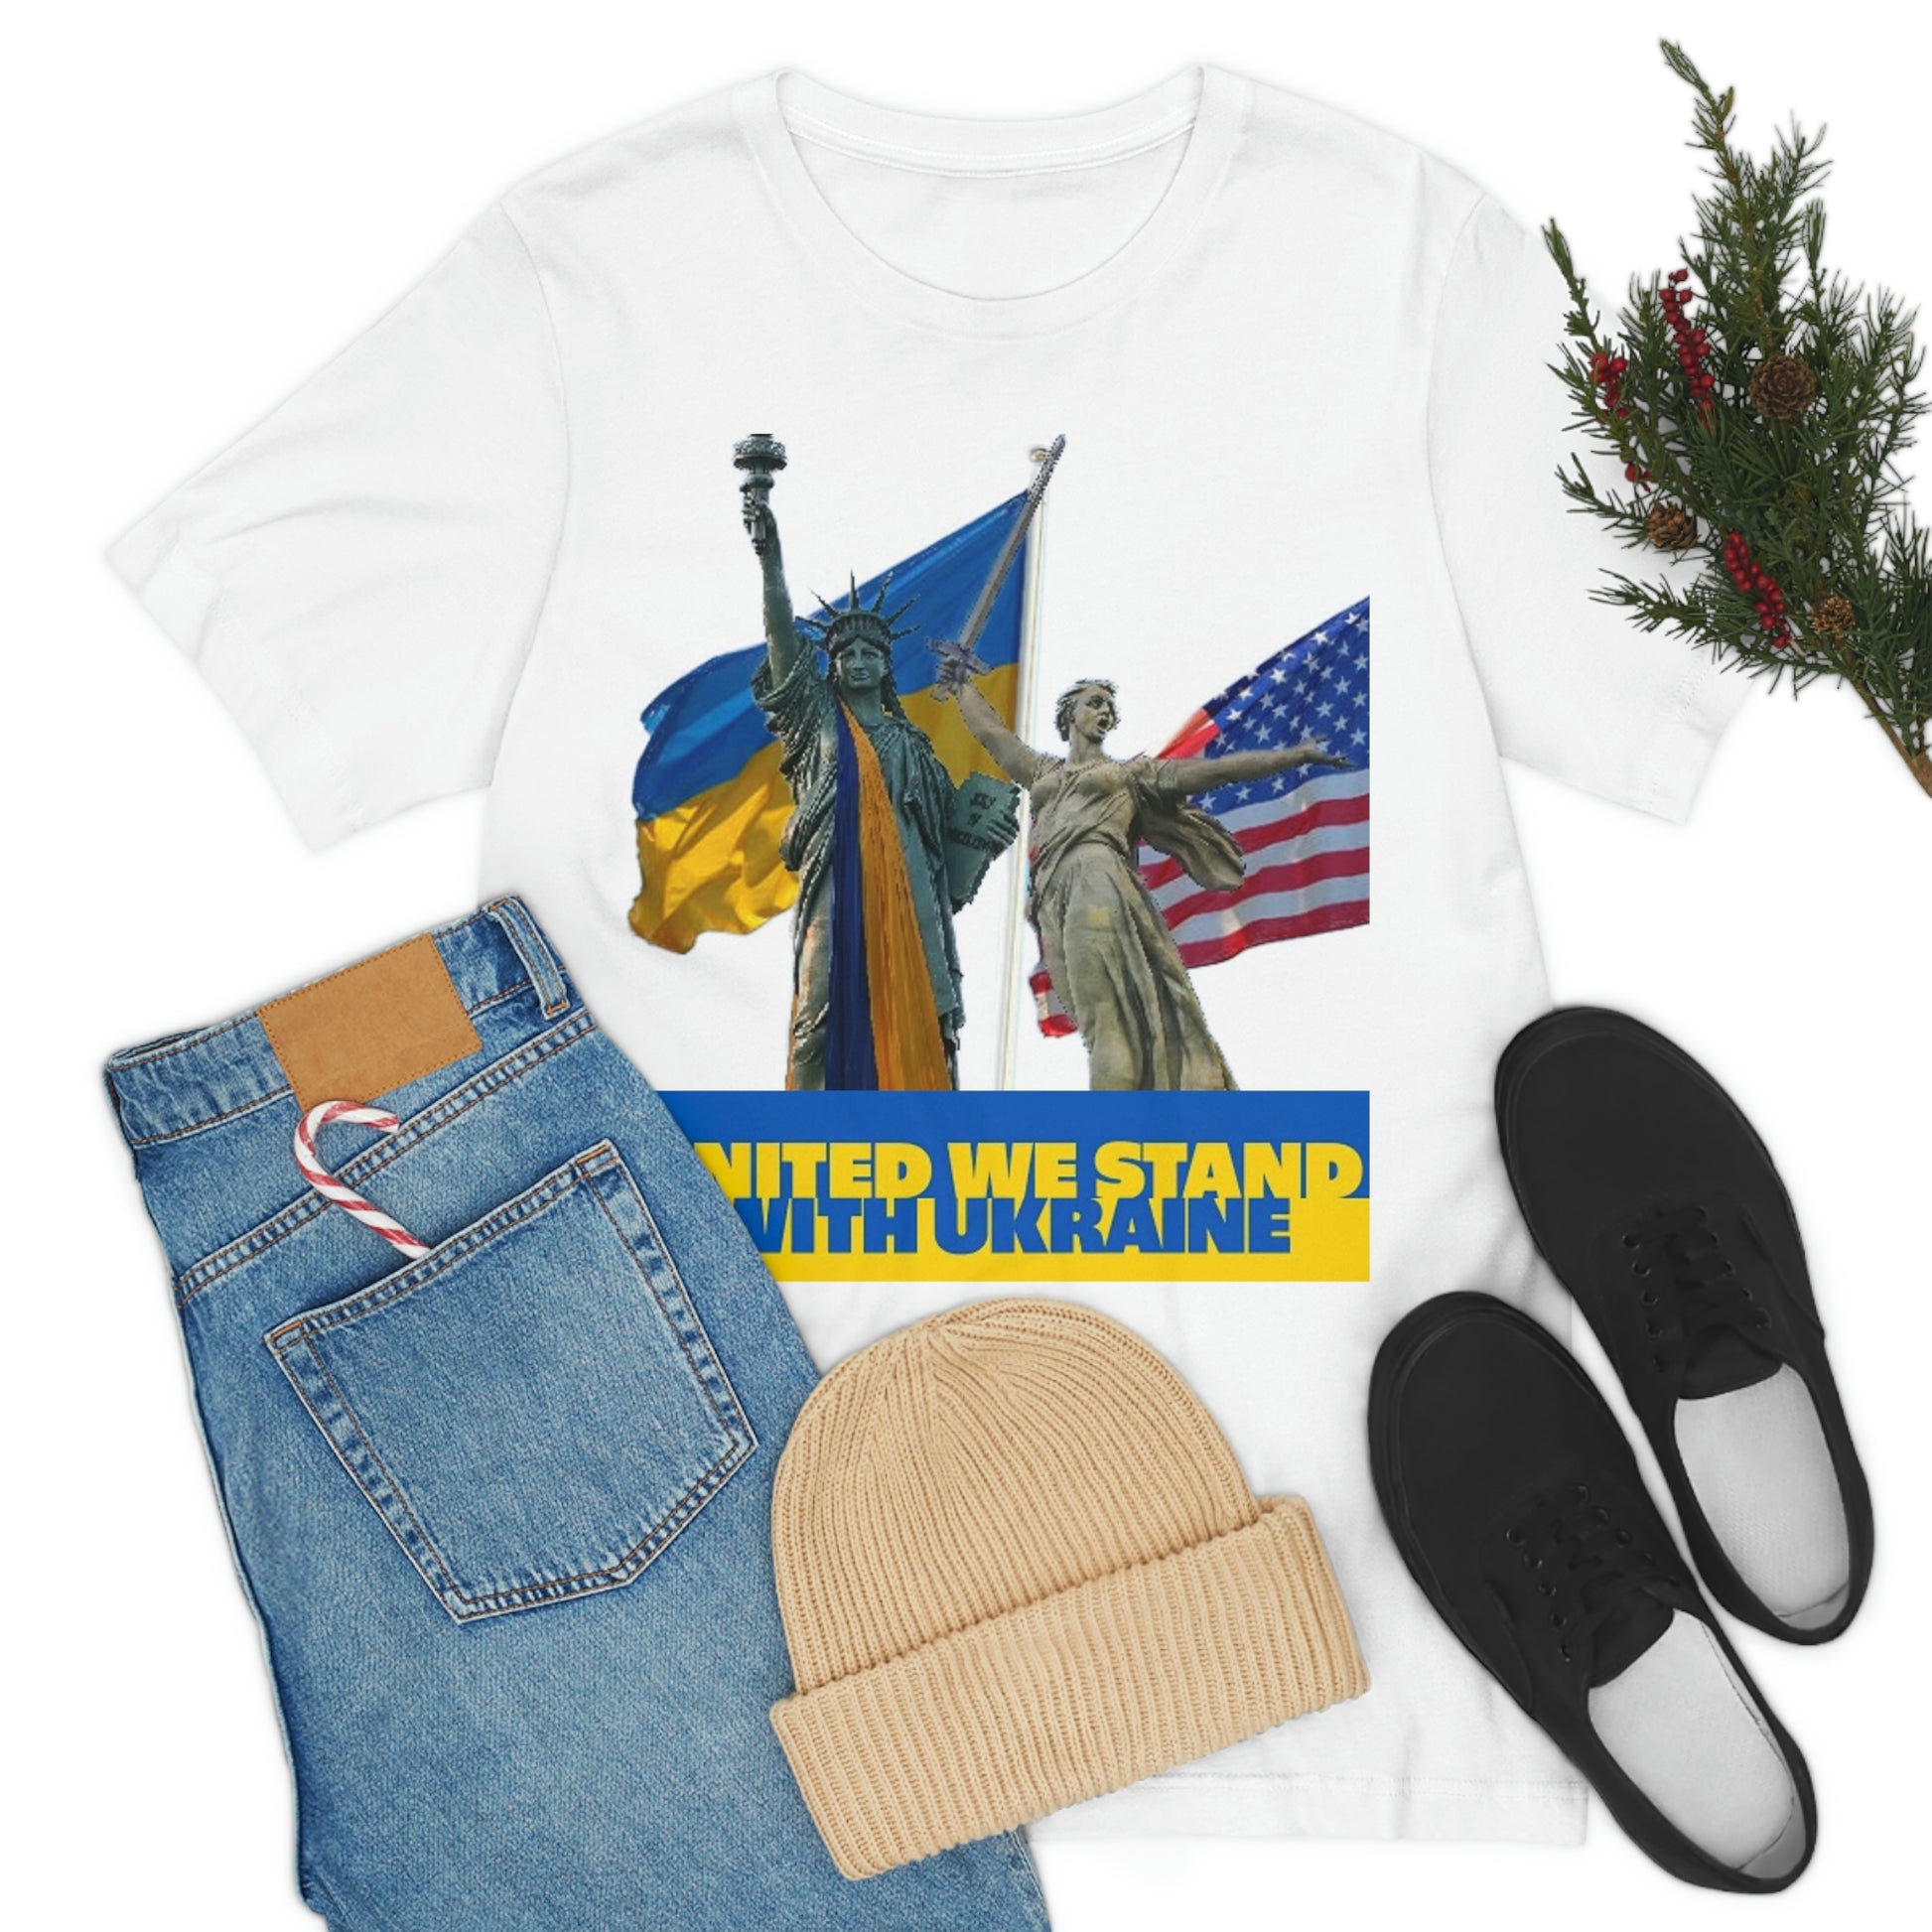 Ukraine American Solidarity Tee Shirt In Context